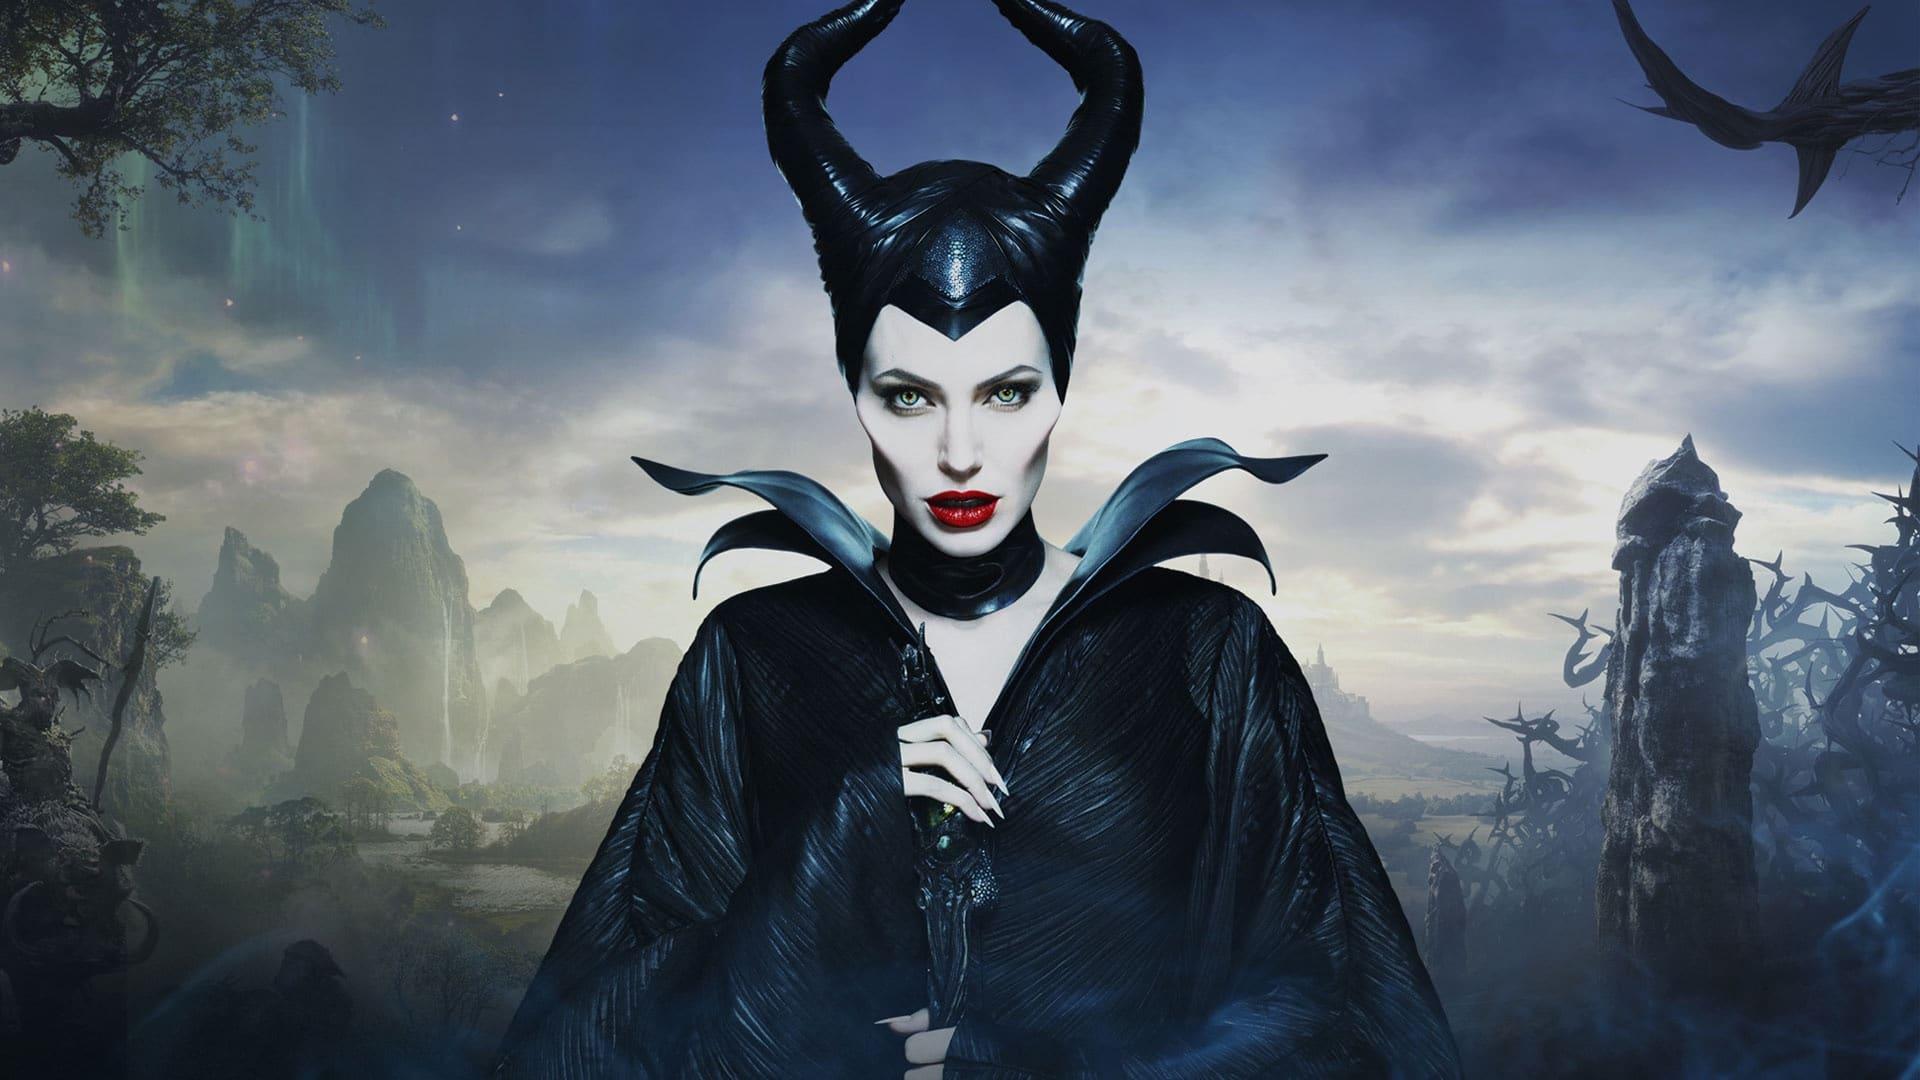 أفضل اعمال انجلينا جولي فيلم Maleficent